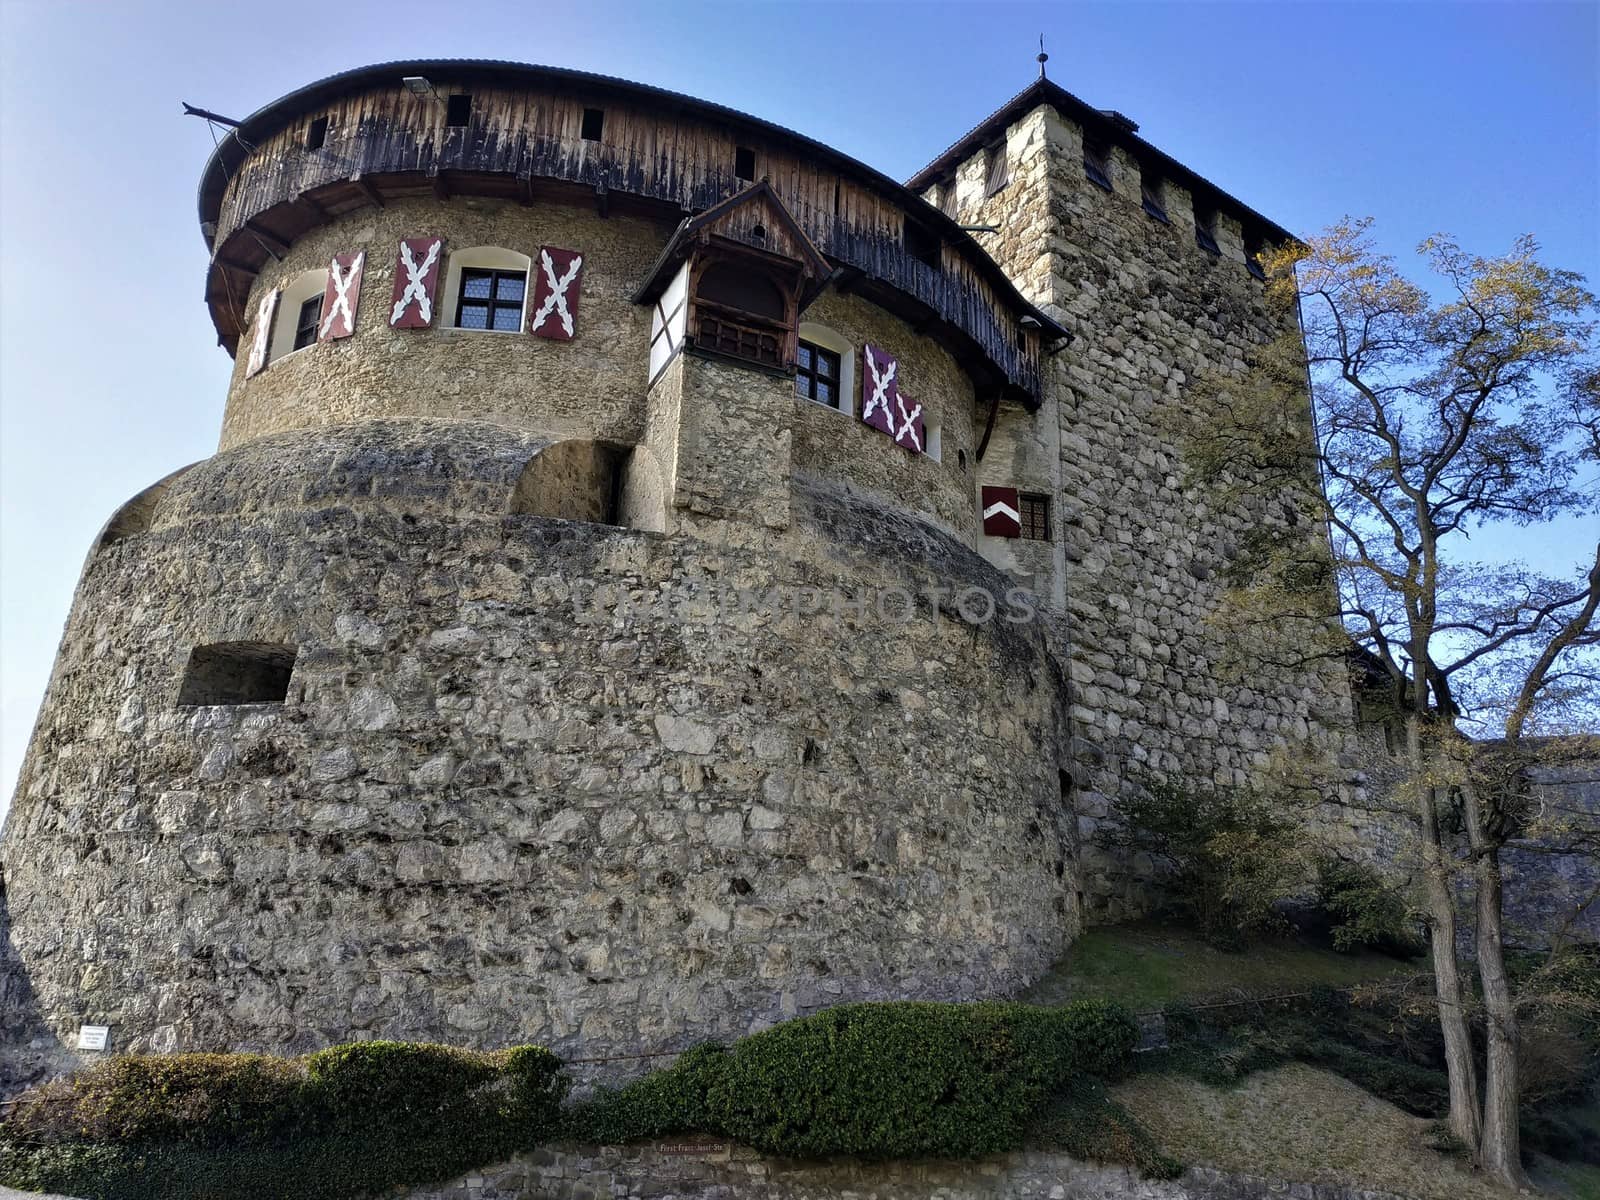 The towers of Vaduz Castle in Liechtenstein by pisces2386